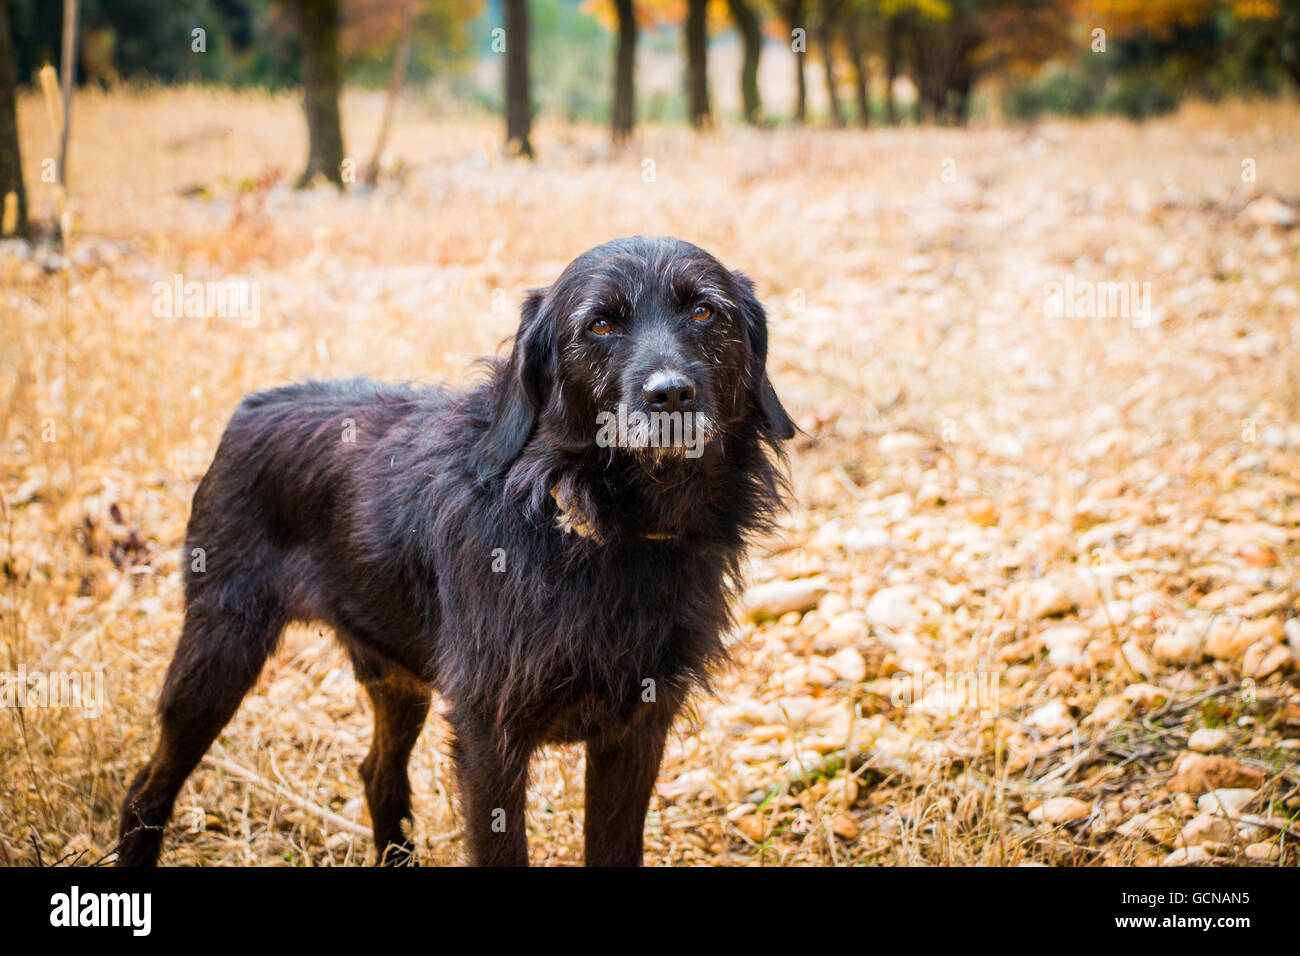 Dieser Hund ist ausgebildet, um nach Burgunder Trüffel zu suchen. In einem Eiche Wald im Herbst. Foto von Provence, Frankreich Stockfoto